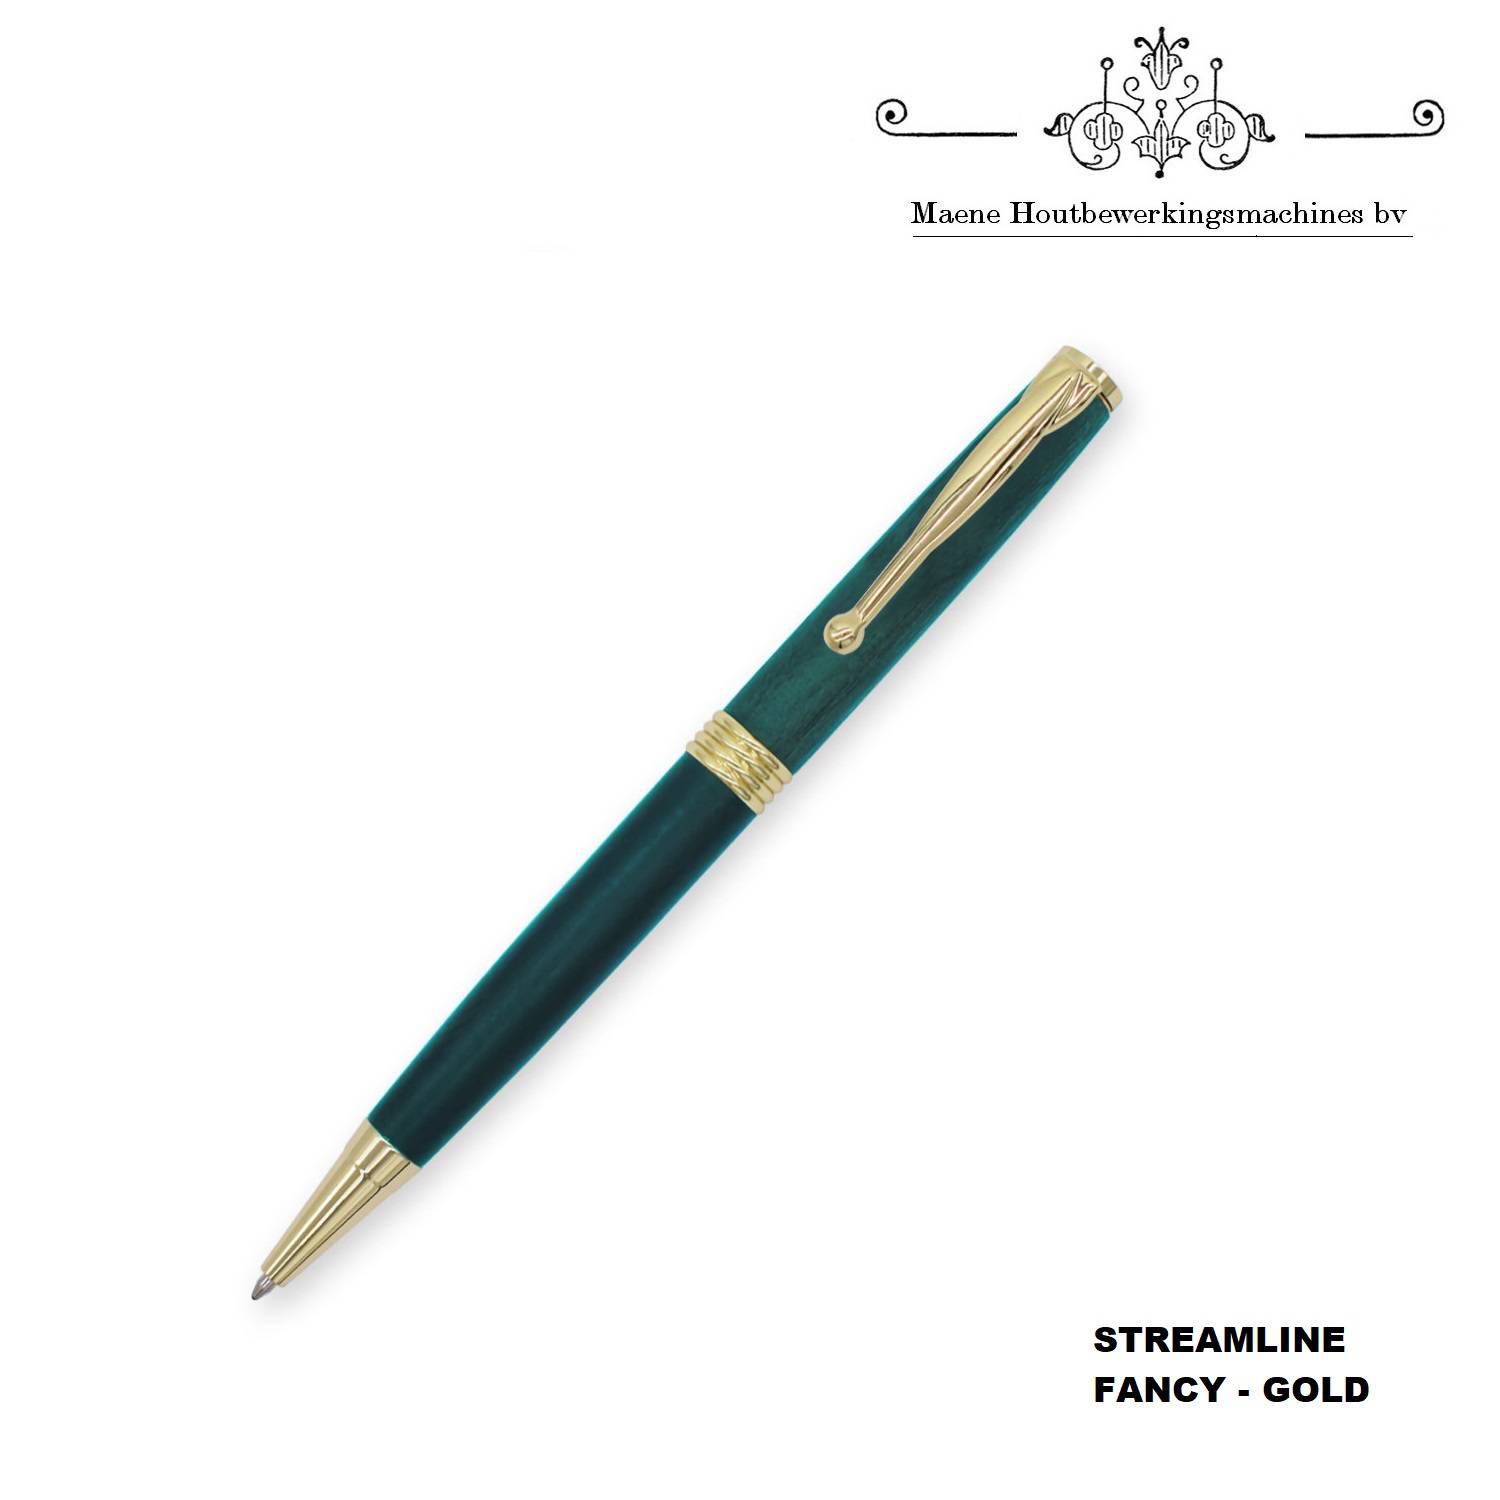 streamline-fancy-gold-pen-kit